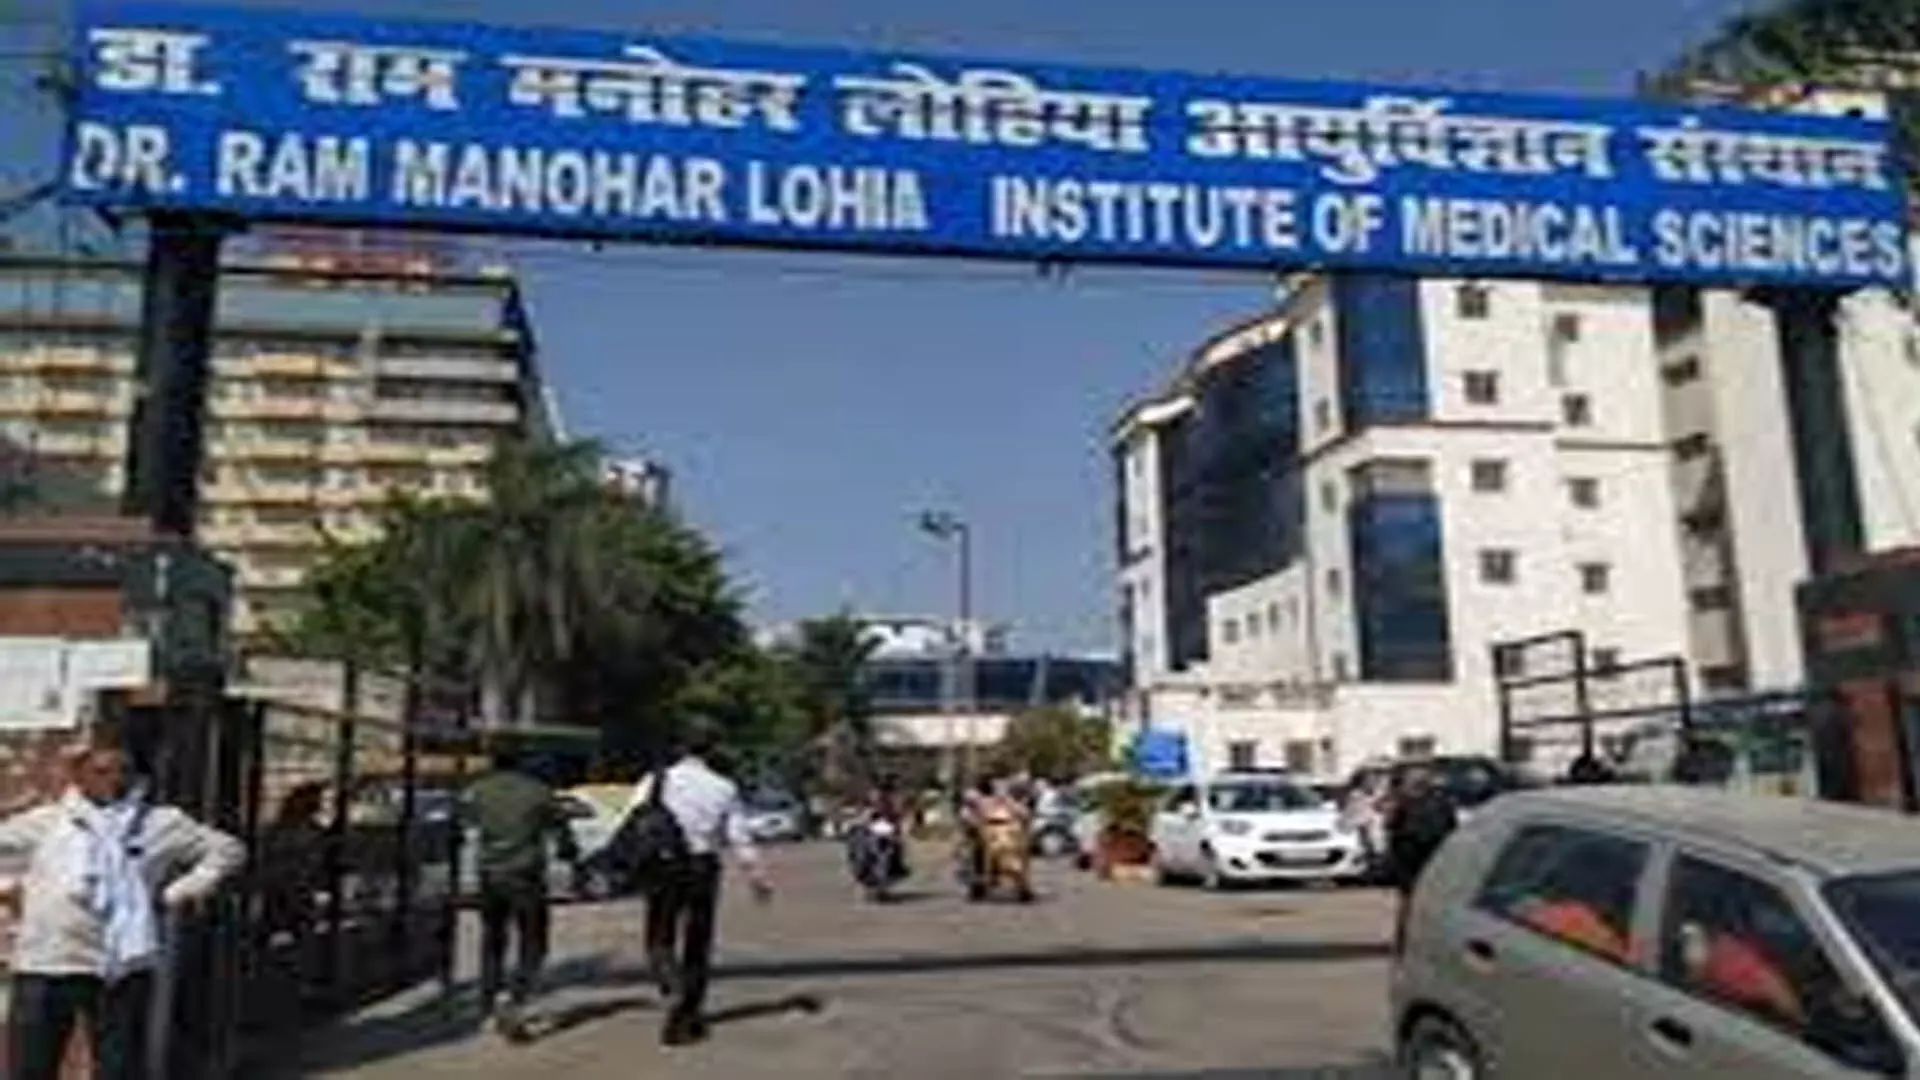 इंस्टीट्यूट ऑफ मेडिकल साइंसेज  डॉ. राम मनोहर लोहिया अस्पताल के लिए  8.8 एकड़ जमीन आवंटित दी